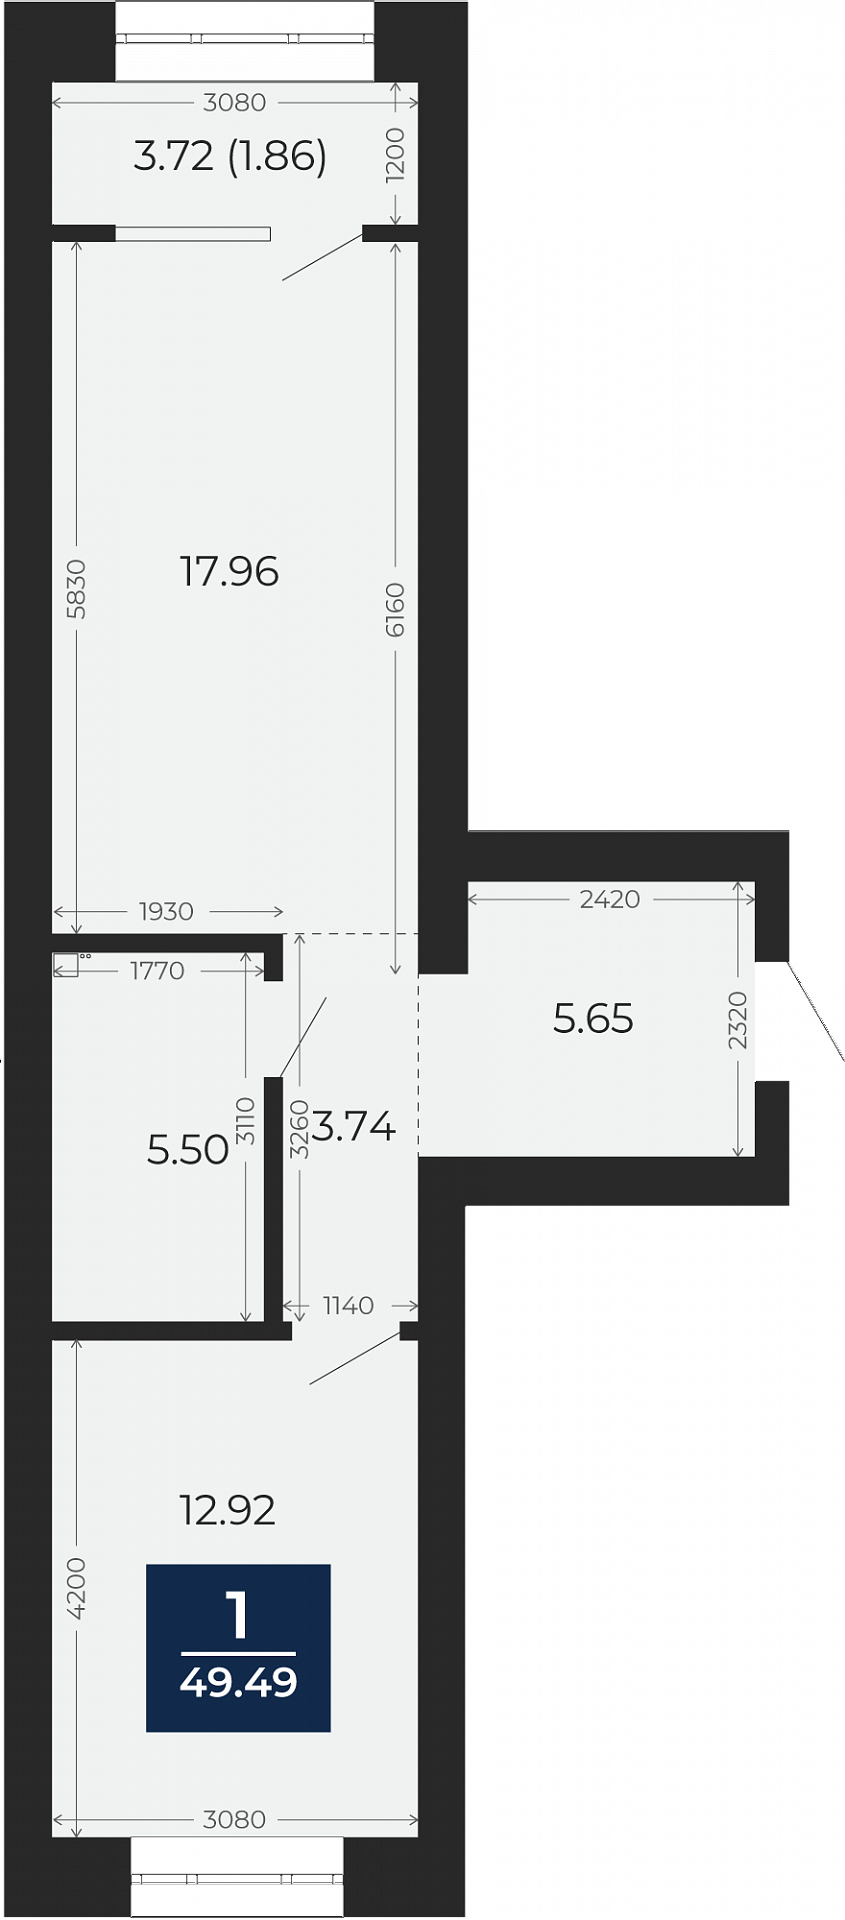 Квартира № 9, 1-комнатная, 49.49 кв. м, 3 этаж